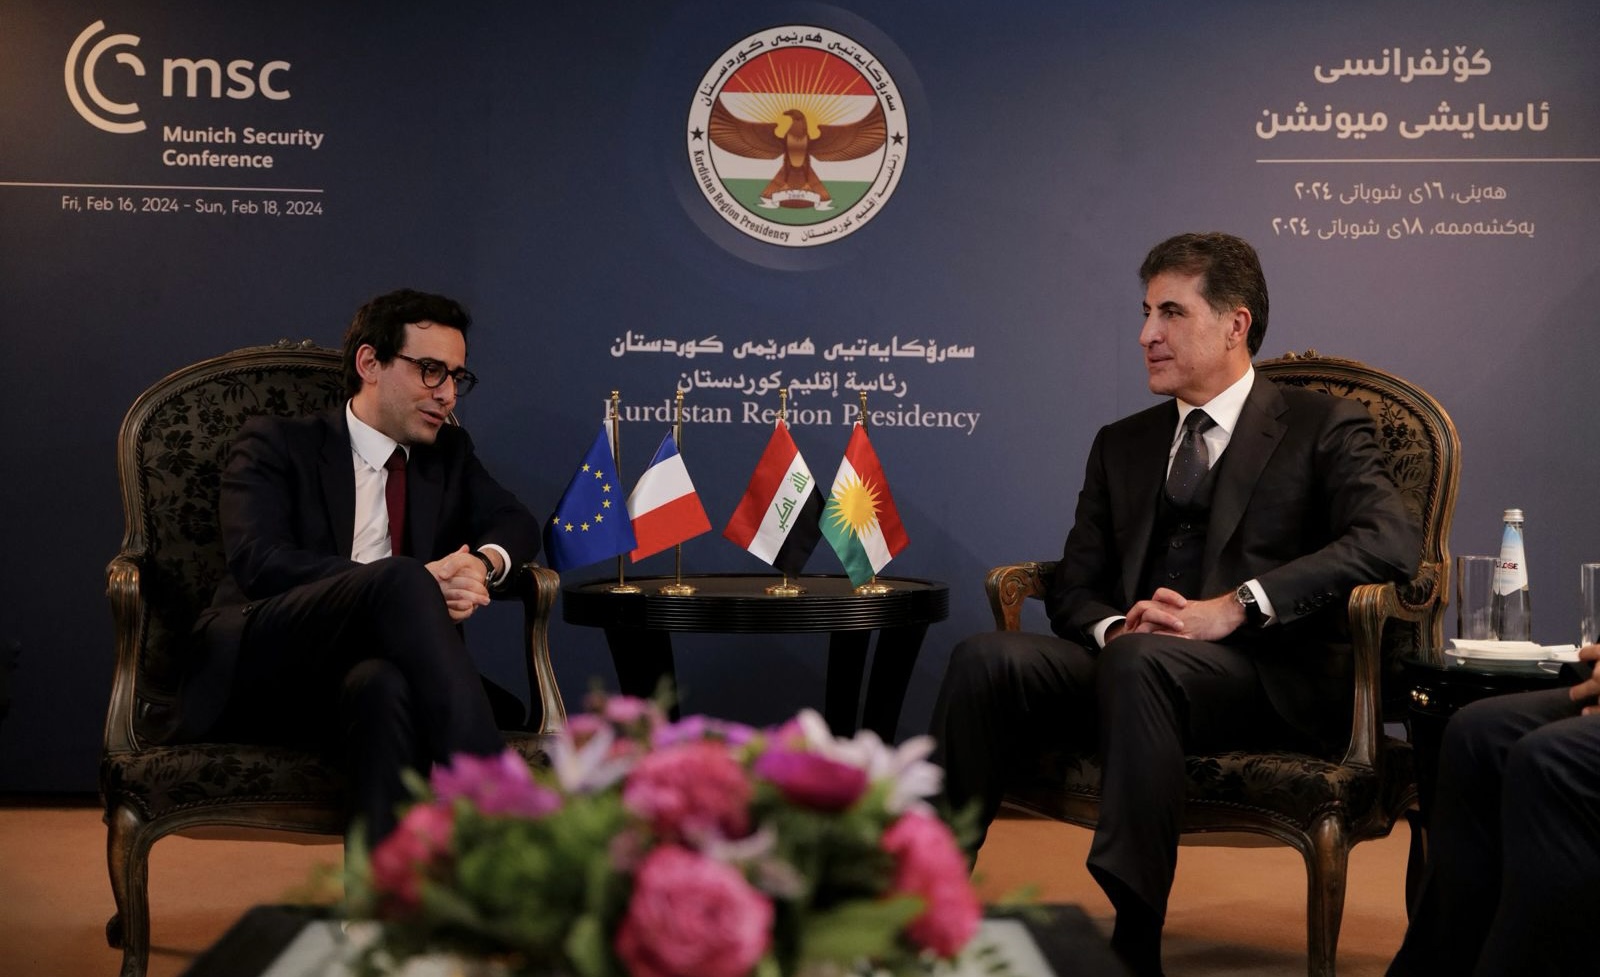 نيجيرفان بارزاني ووزير خارجية فرنسا يحذران من "خطورة" توسيع دائرة التعقيدات في الشرق الأوسط